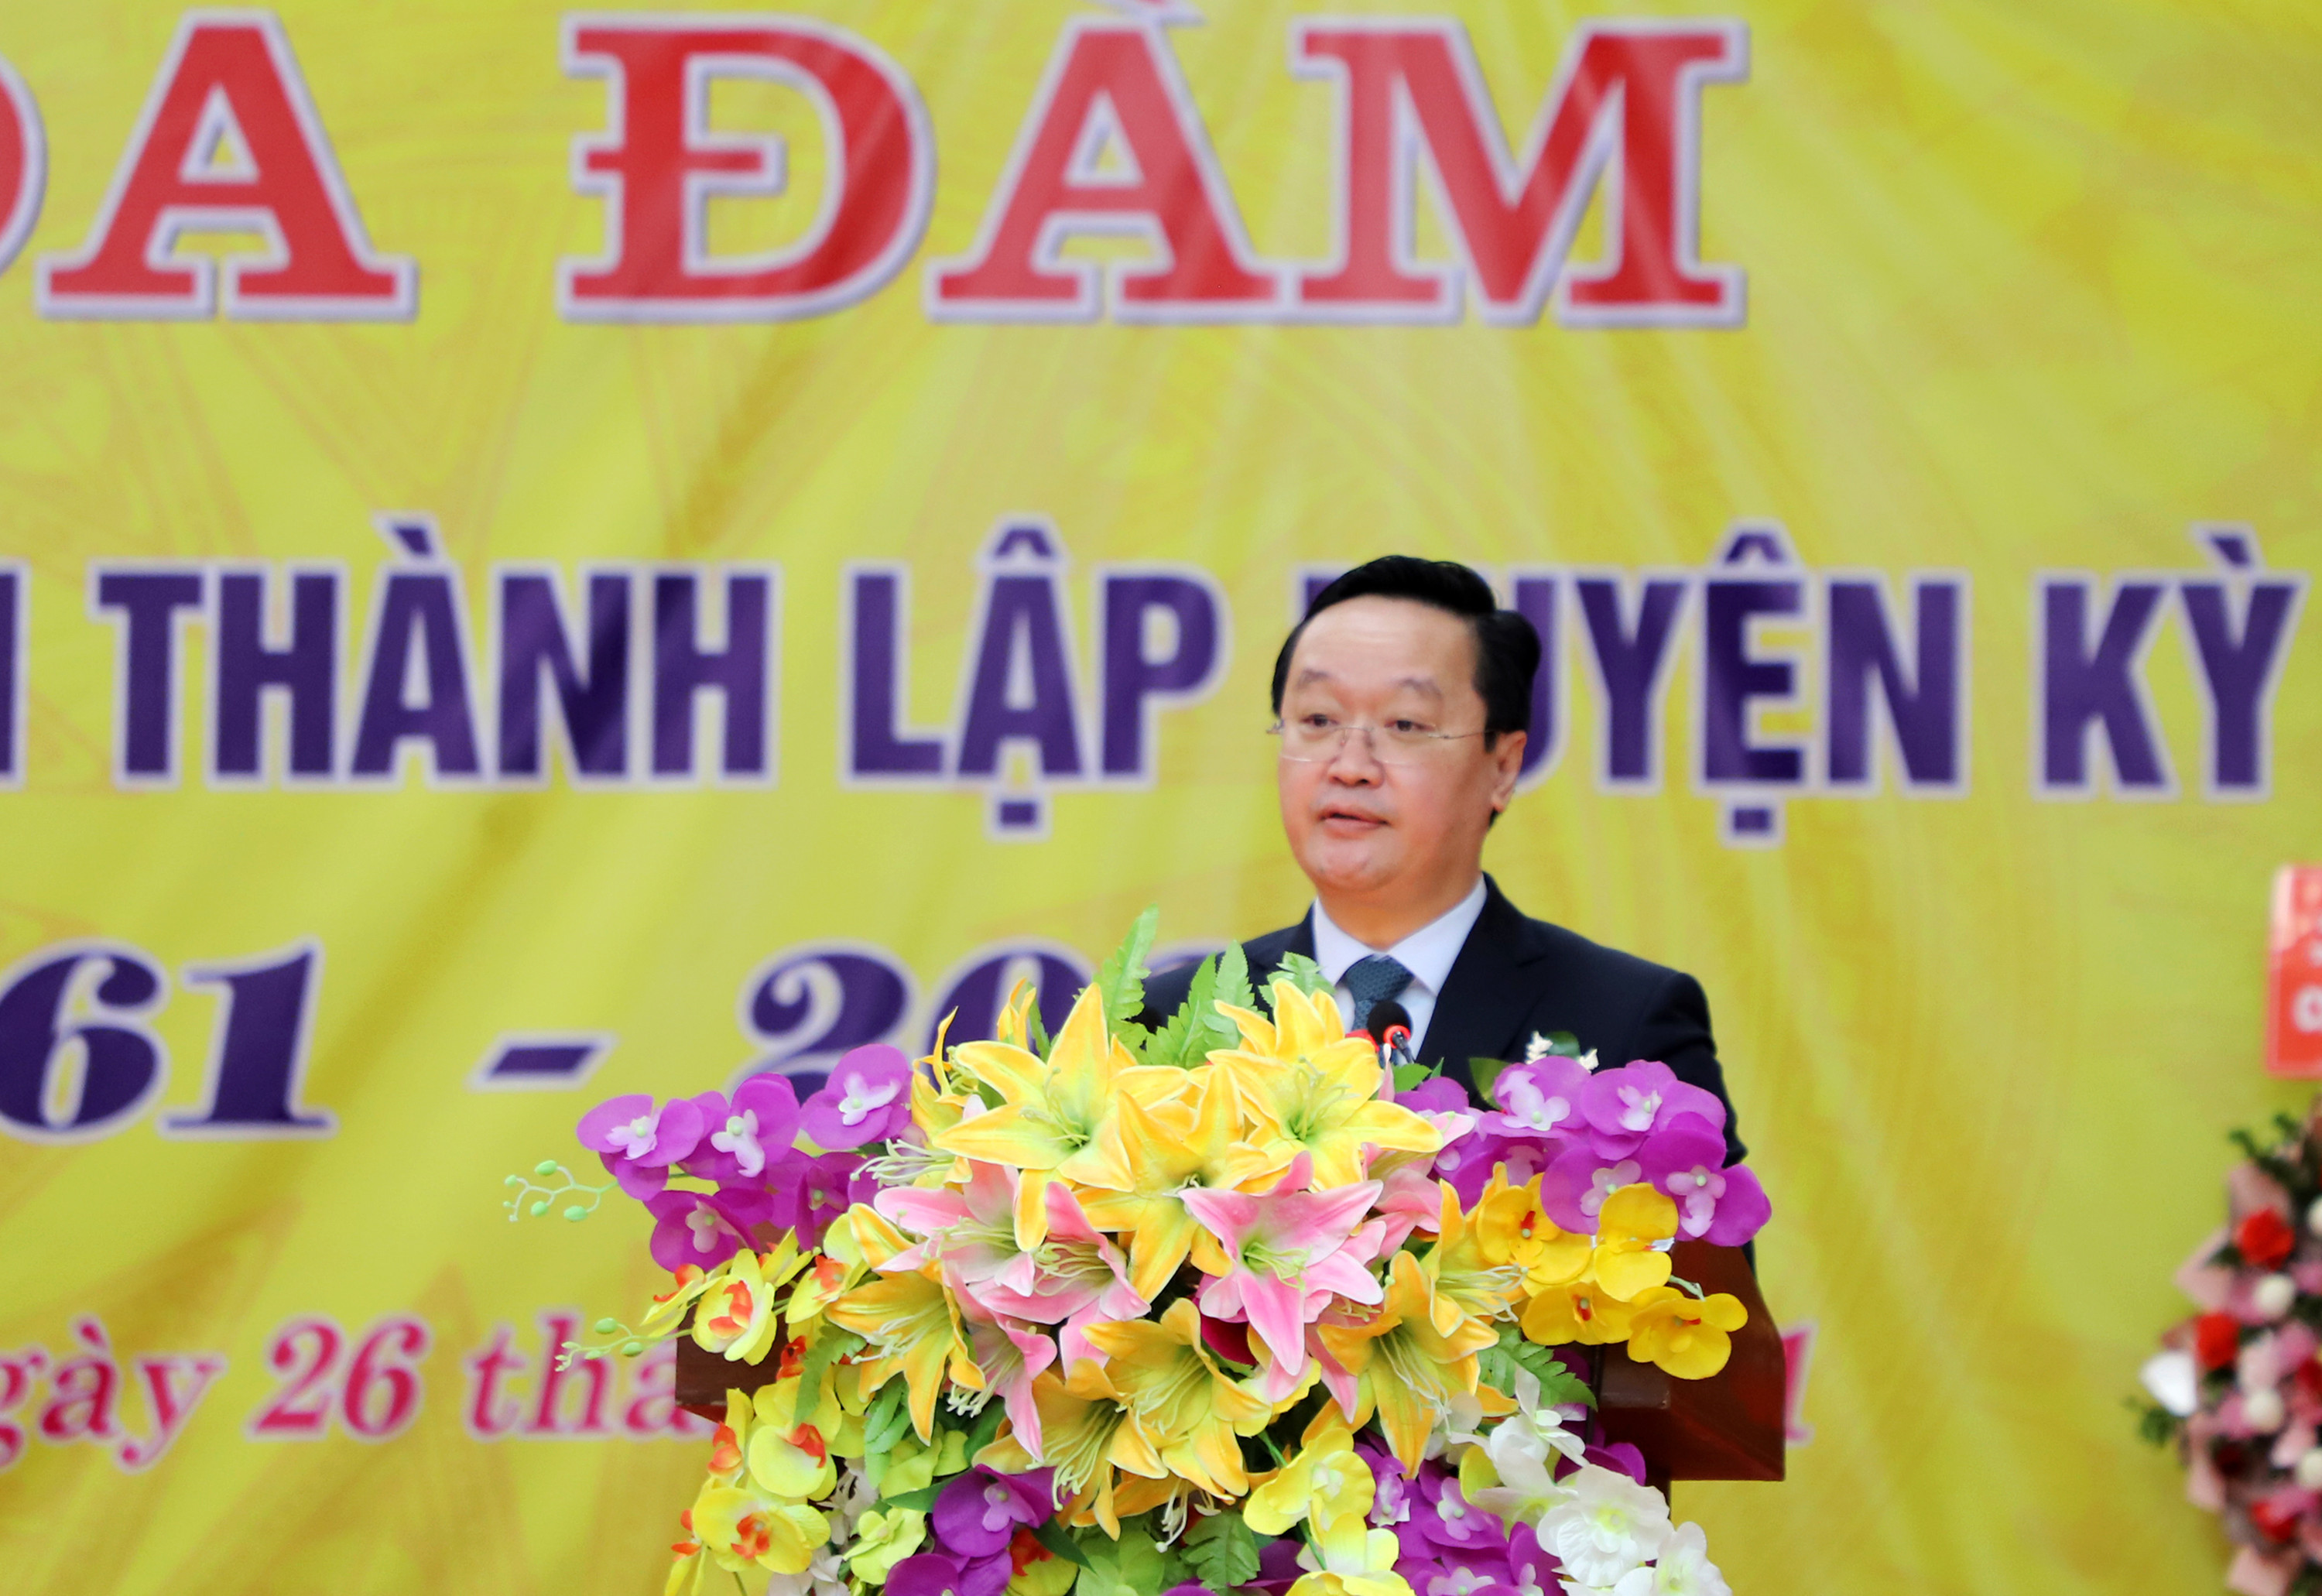 Đồng chí Nguyễn Đức Trung - Chủ tịch UBND tỉnh phát biểu tại buổi tọa đàm kỷ niệm 60 năm thành lập huyện Kỳ Sơn. Ảnh: Phạm Bằng